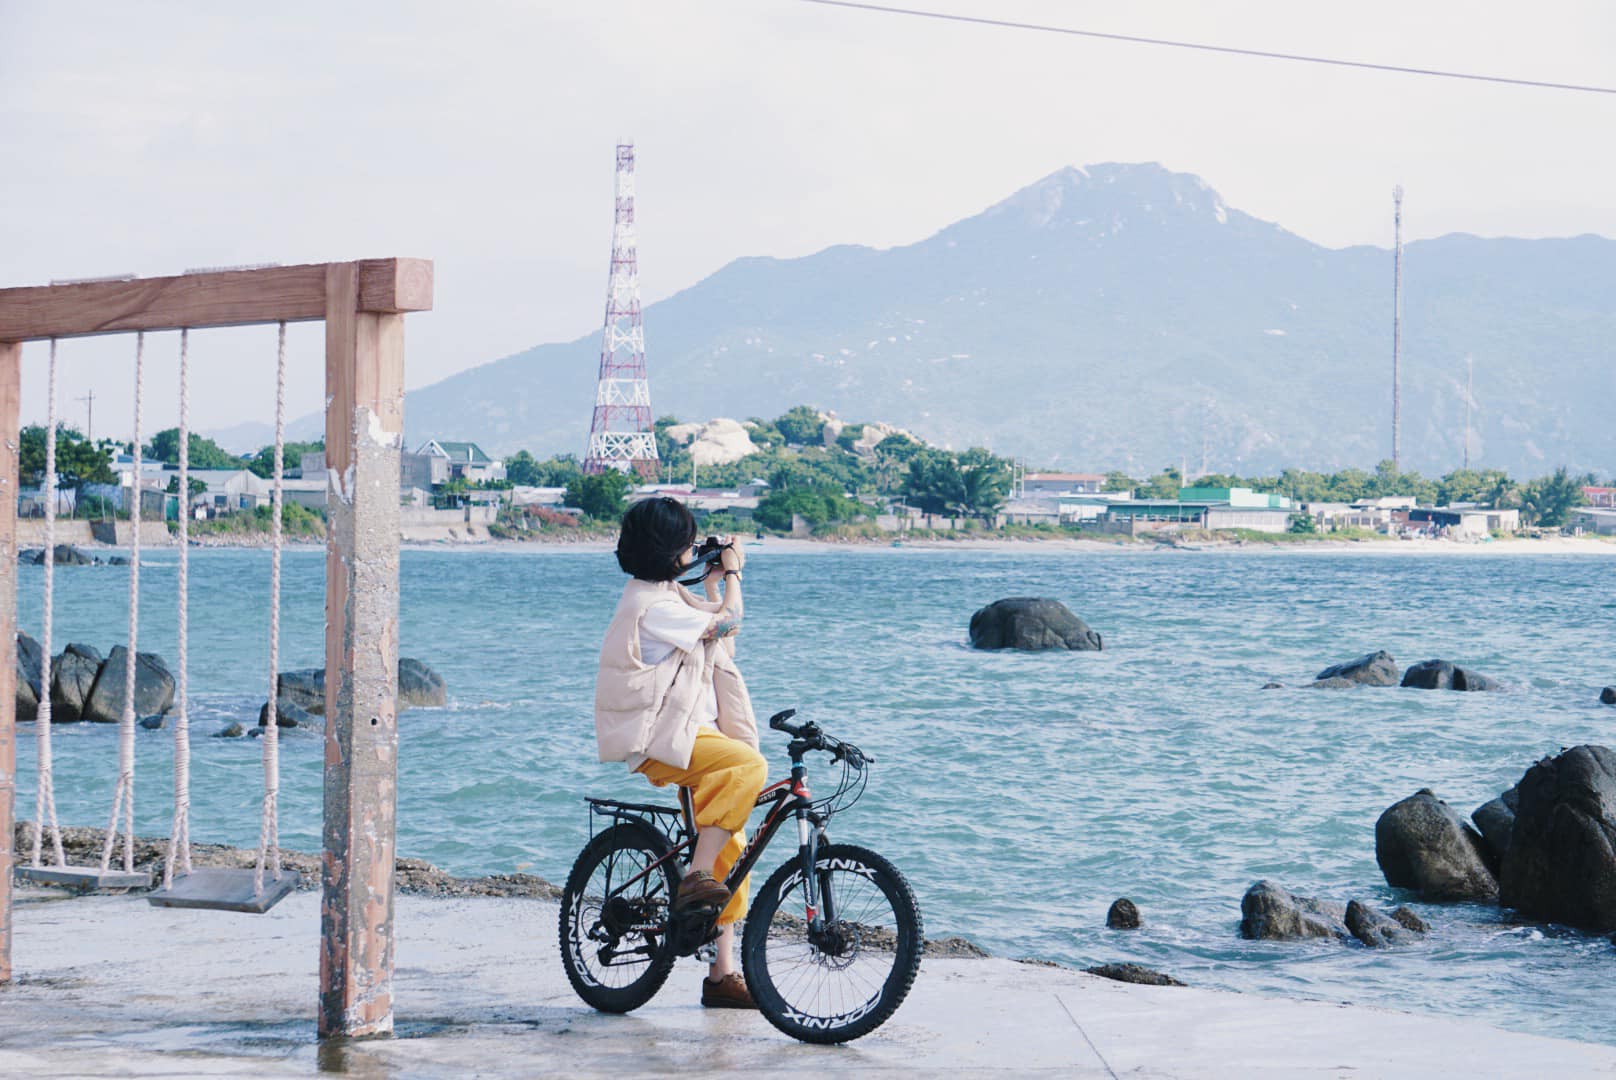 Tết Nguyên đán du lịch ở vùng biển Ninh Thuận vừa hưởng thời tiết trong lành, vừa thưởng cảnh đẹp mà lại vắng khách - Ảnh 3.